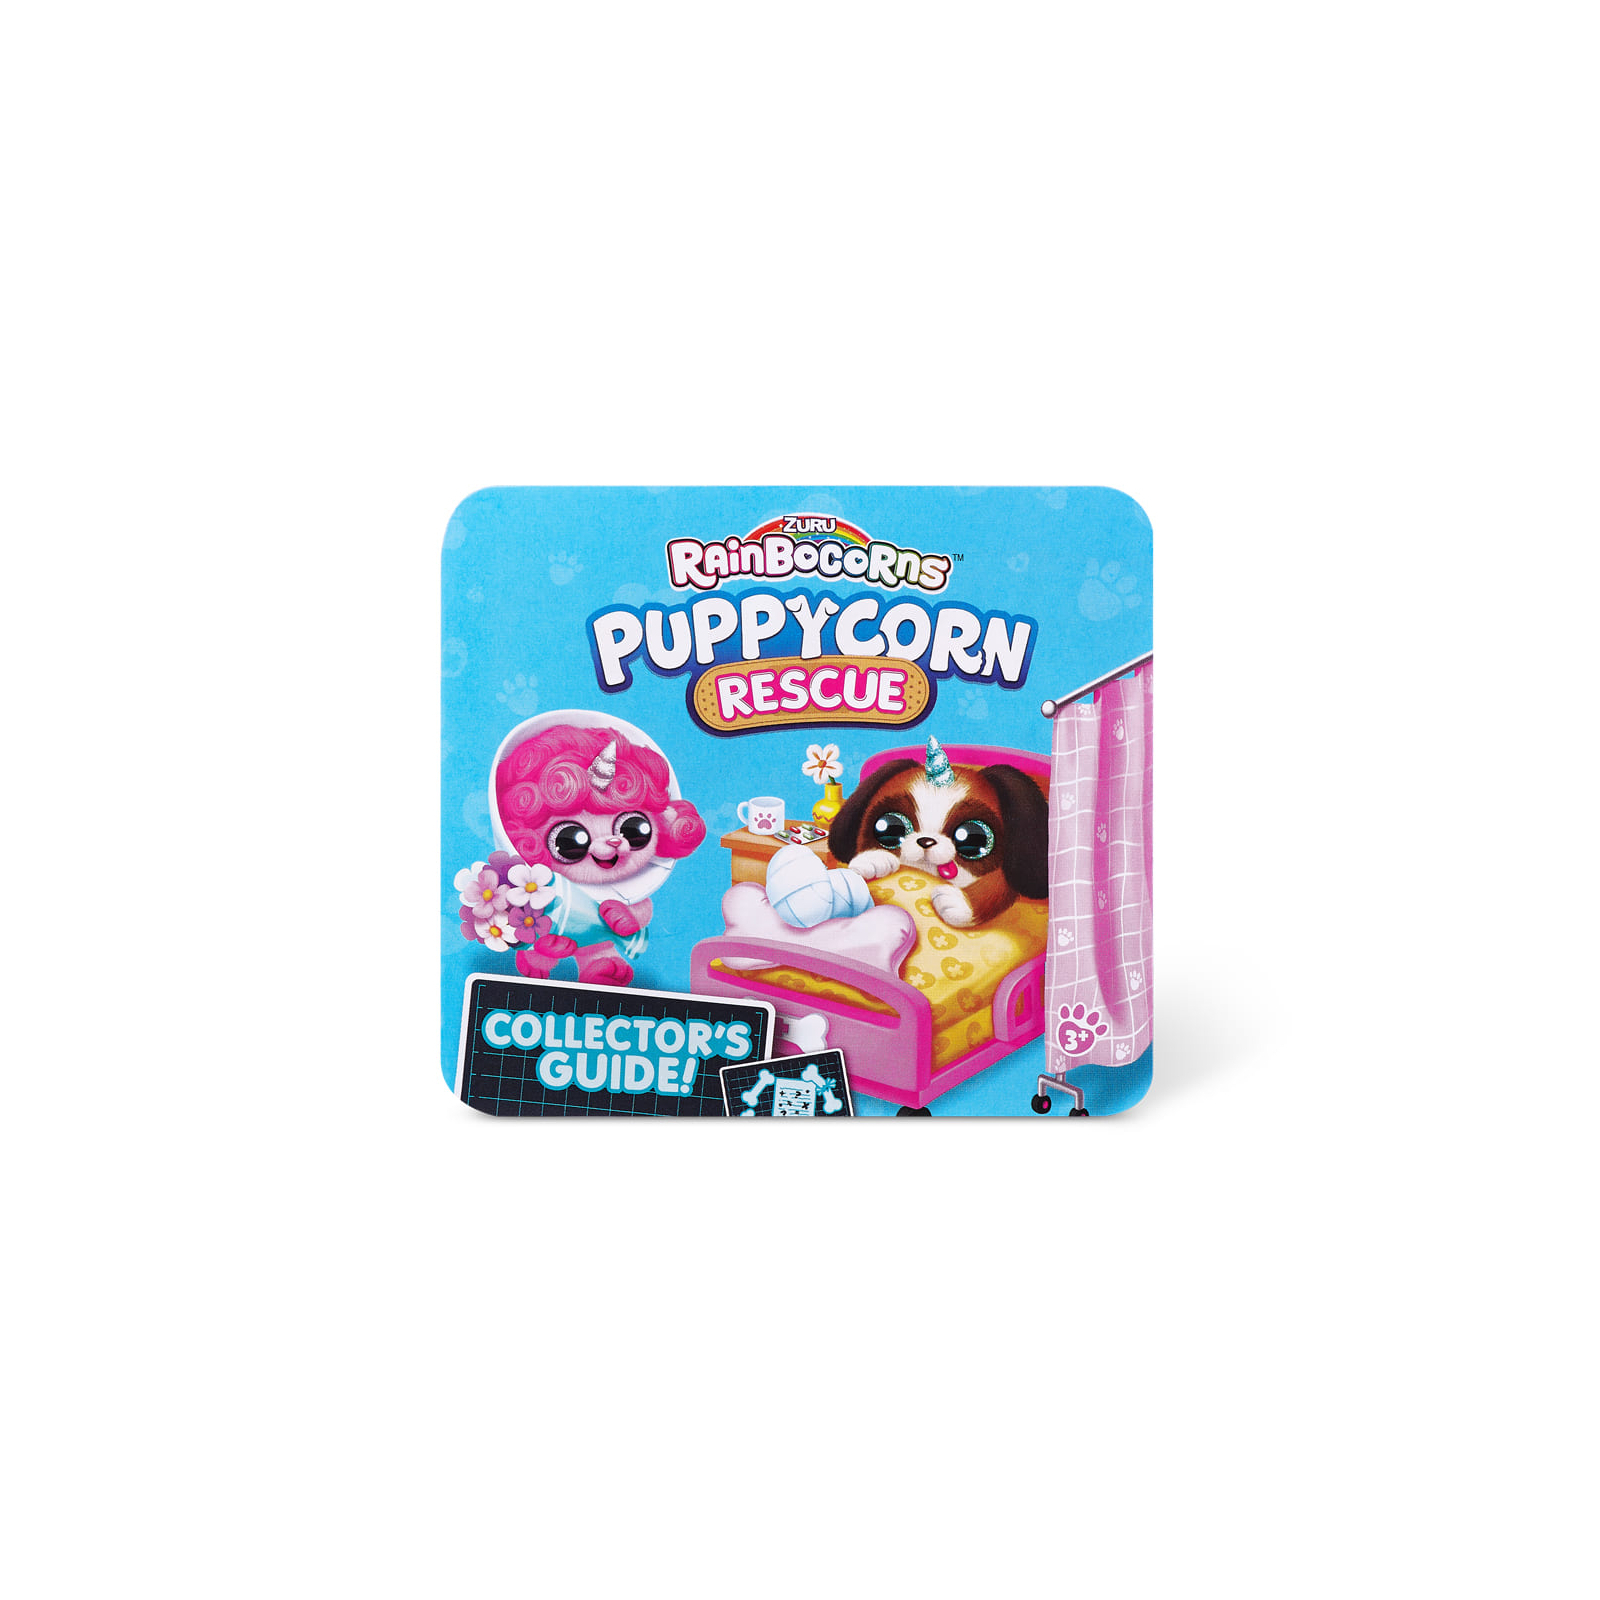 Мягкая игрушка Rainbocorns сюрприз H серия Puppycorn Rescue (9261H) изображение 13